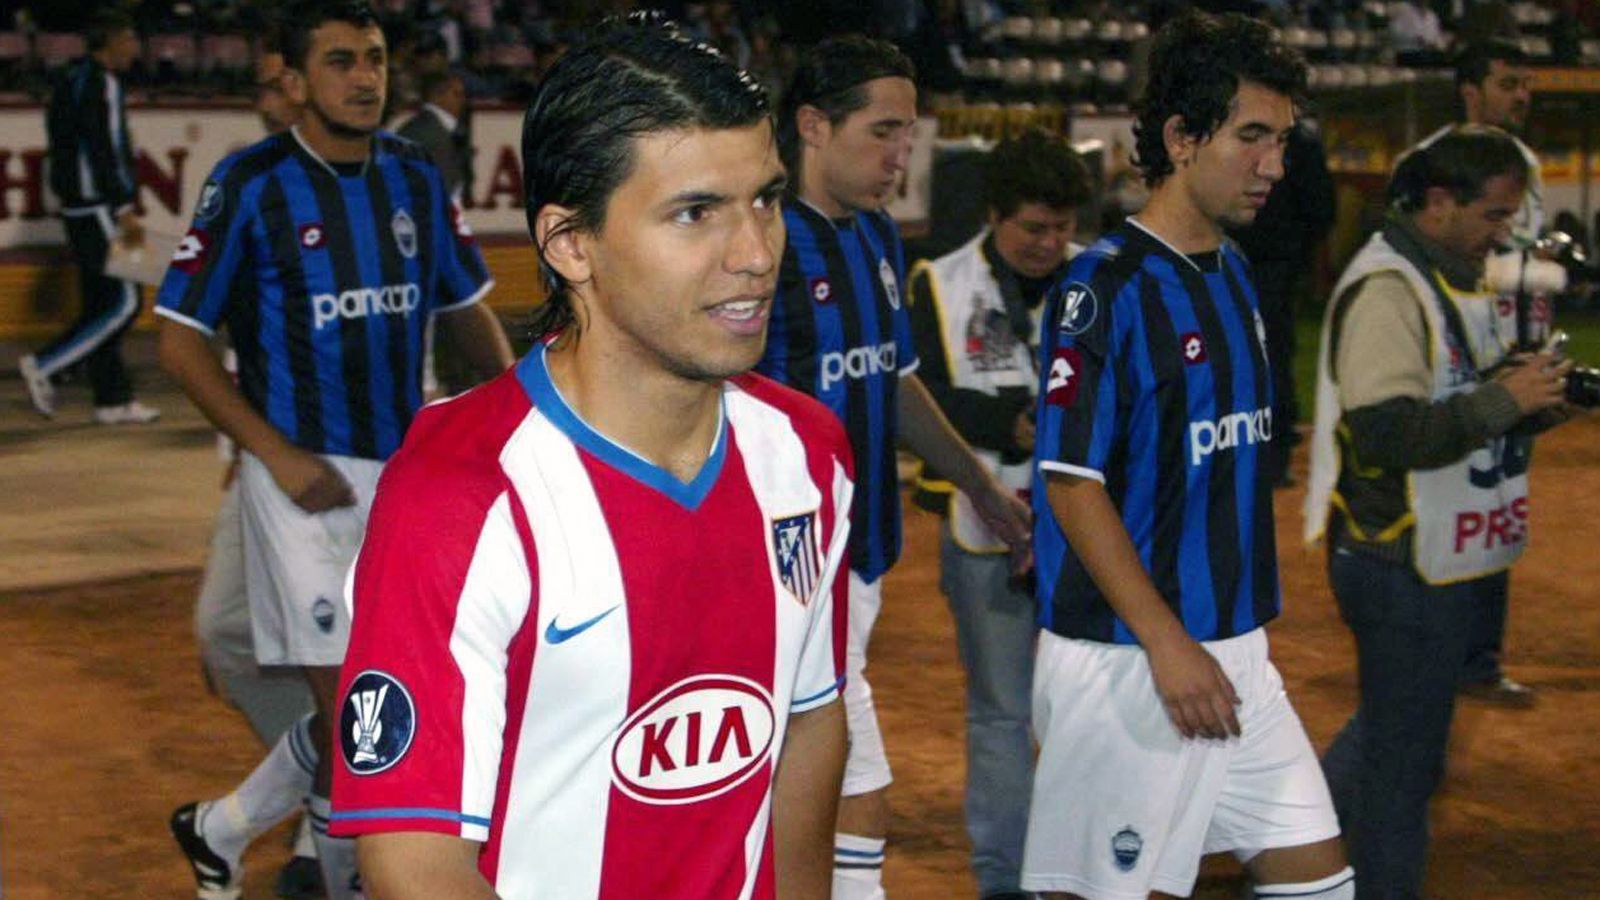 
                <strong>Platz 5 - Sergio Agüero (Atletico Madrid)</strong><br>
                Alter bei seinem Dreierpack: 19,3 JahreSpiel gegen: Kayseri Erciyesspor (4. Oktober 2007)
              